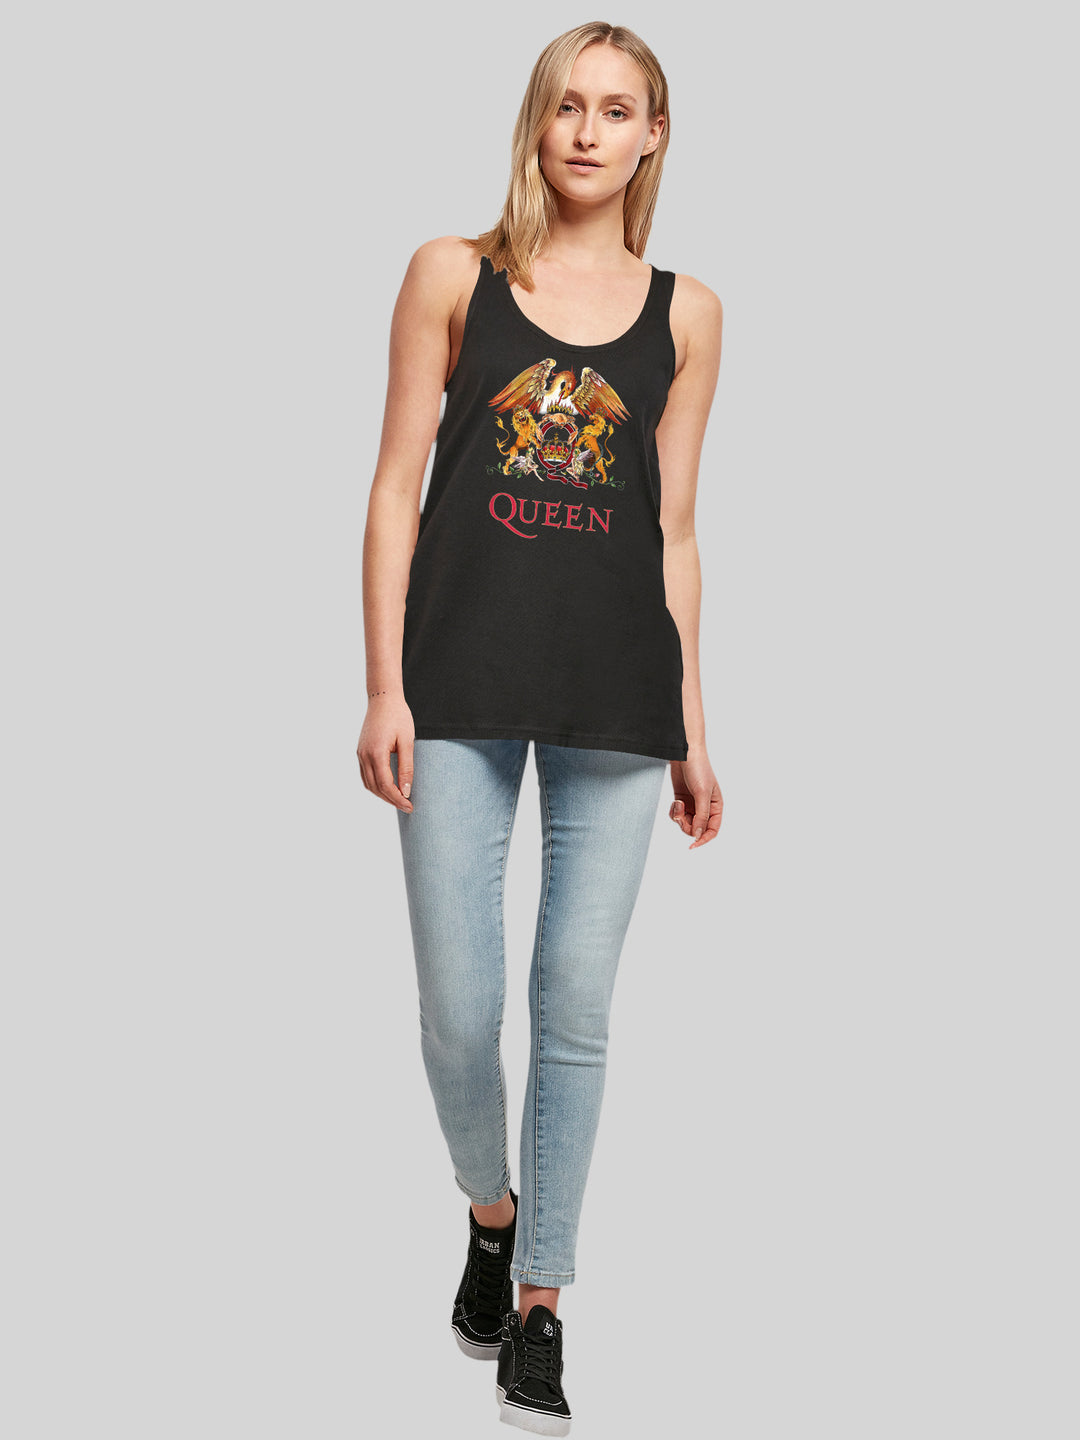 Queen Classic Crest Blk with Ladies Tanktop